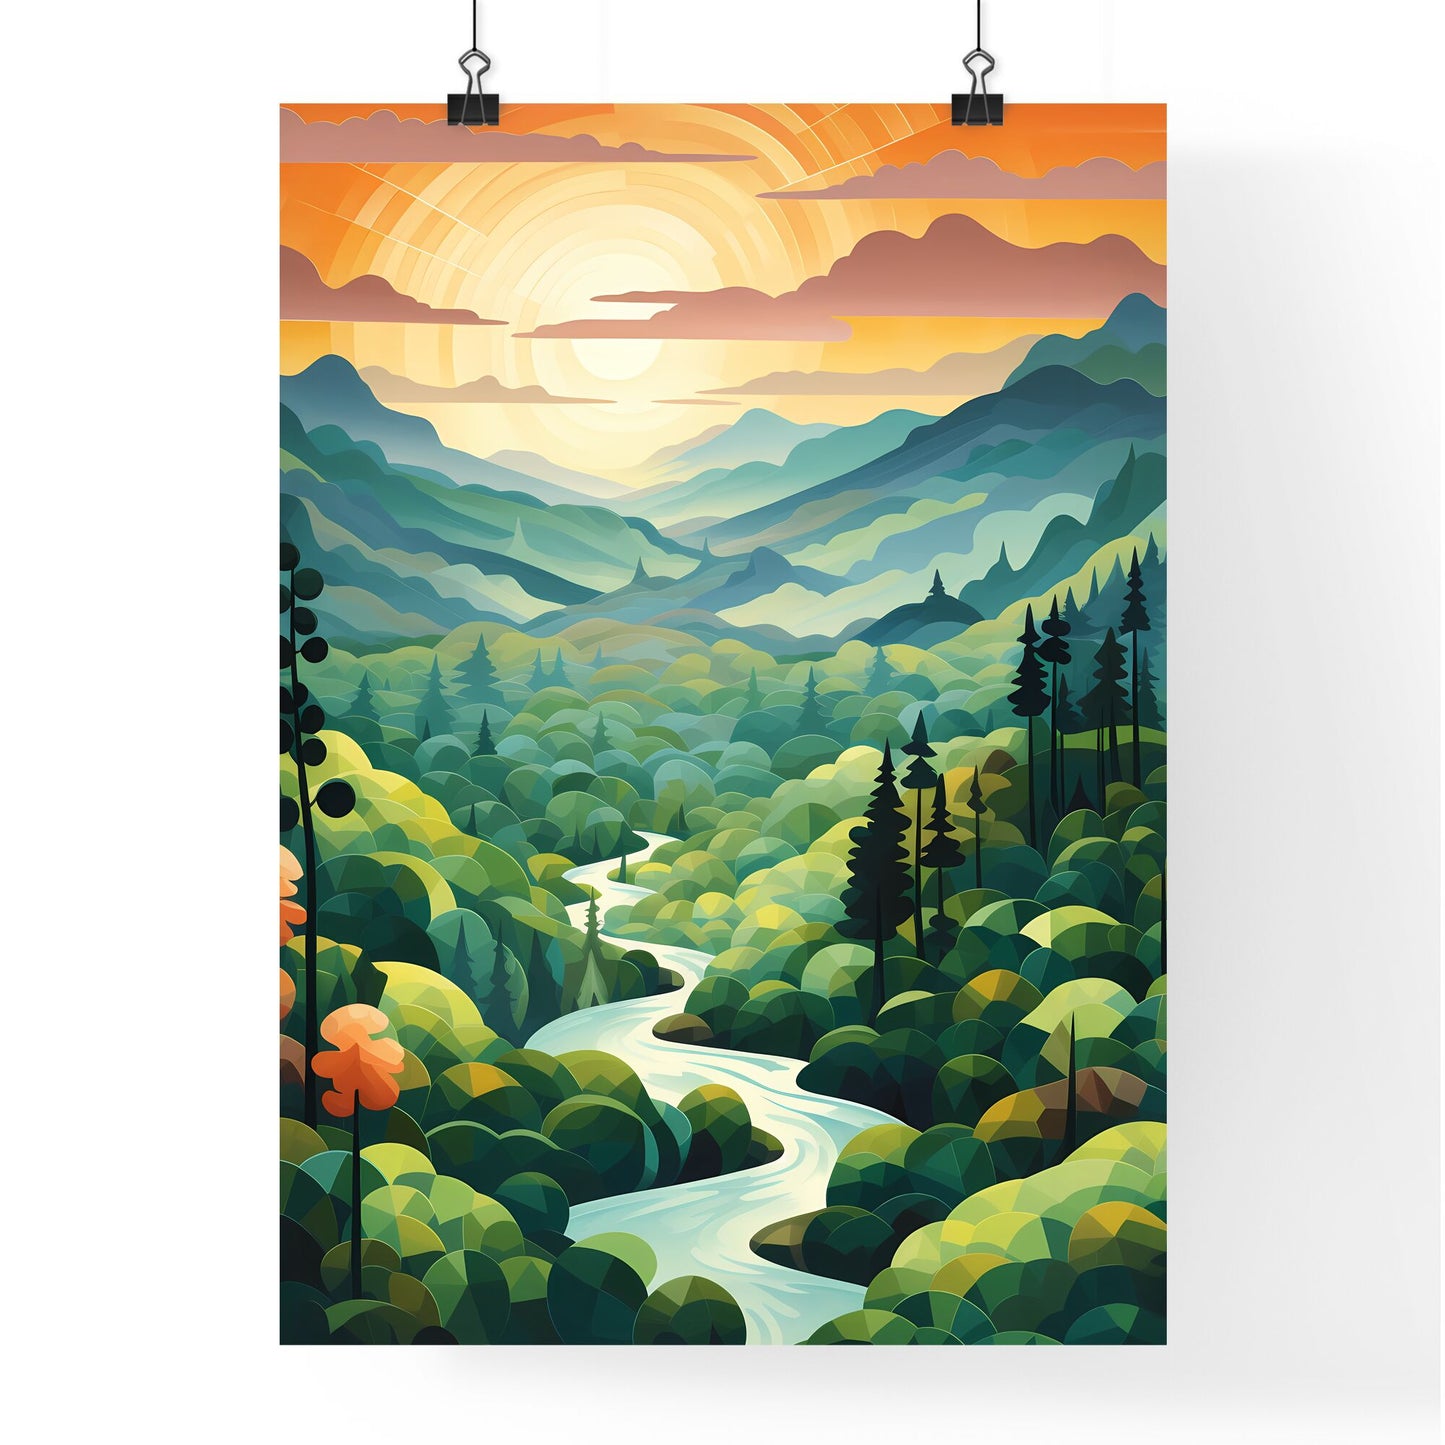 River Running Through A Forest Art Print Default Title